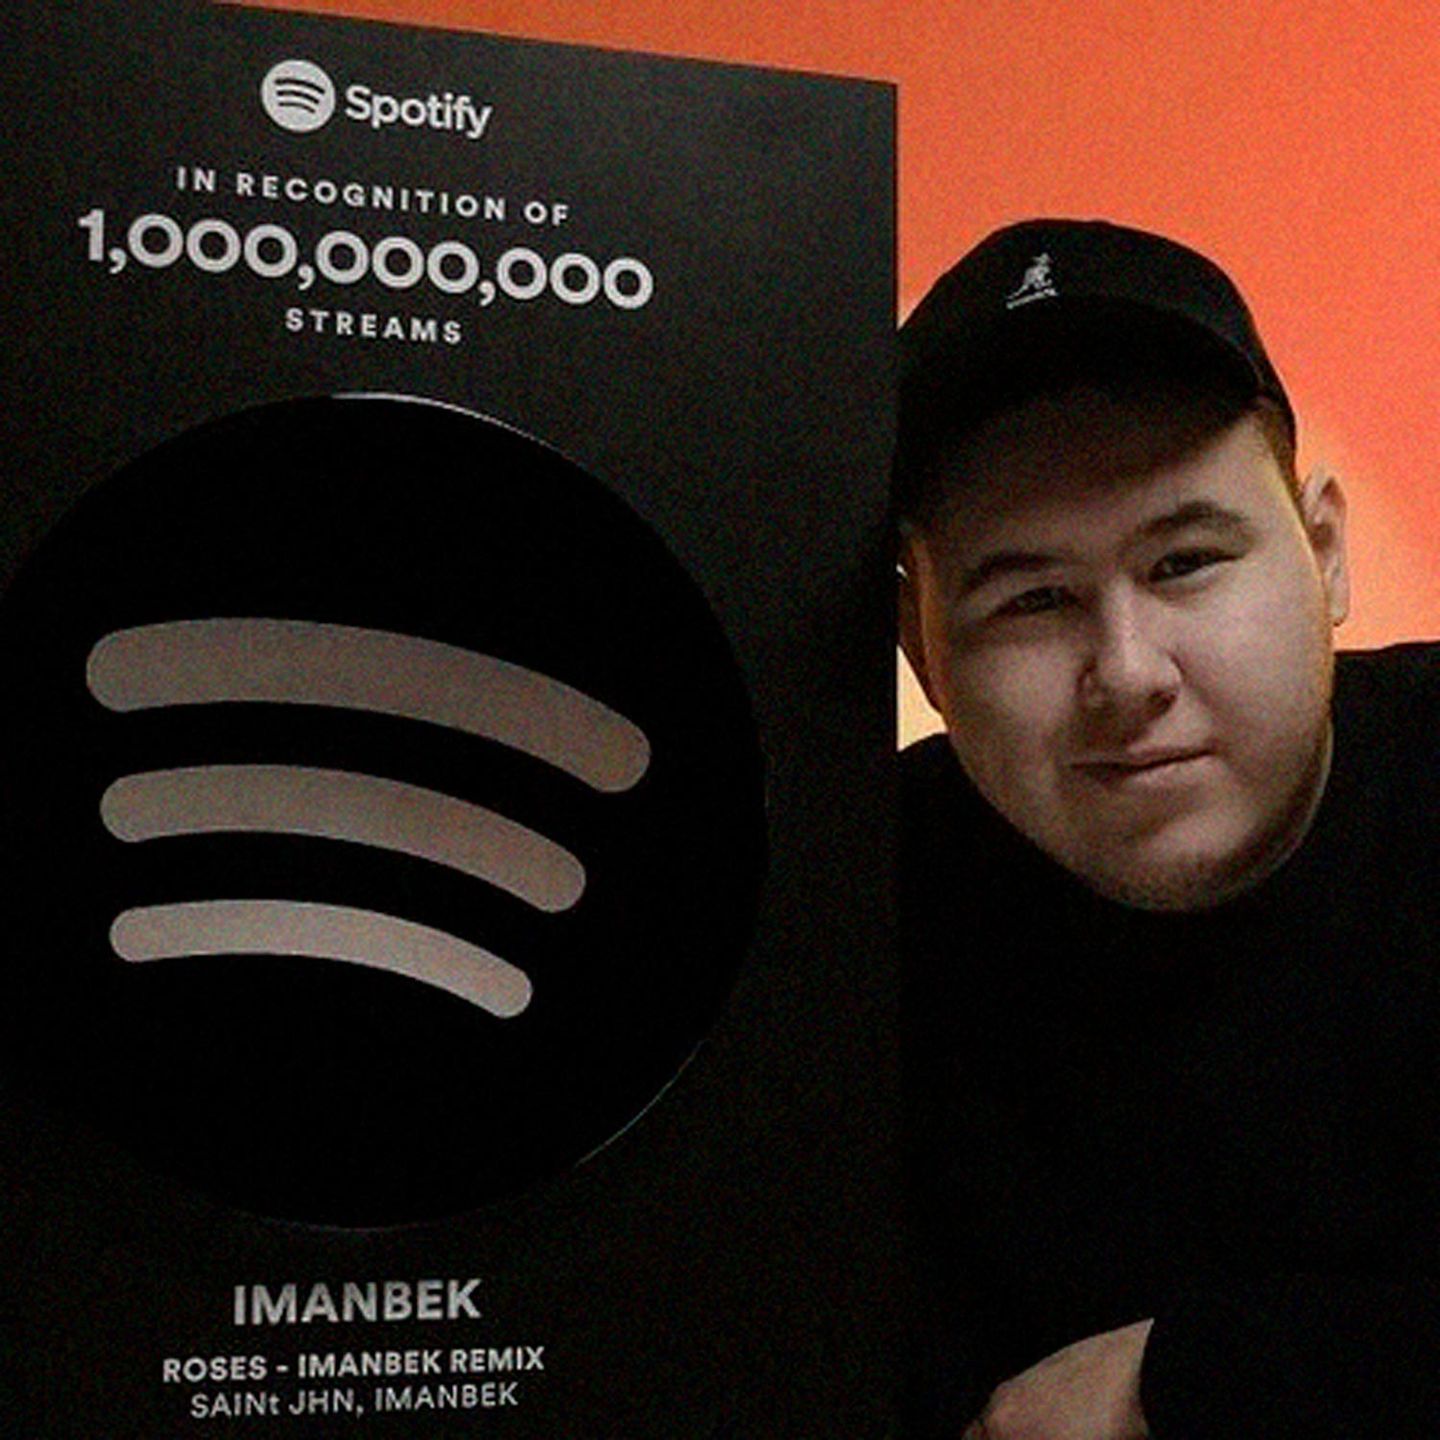 Ремикс казахстанского диджея Imanbek набрал миллиард прослушиваний на Spotify